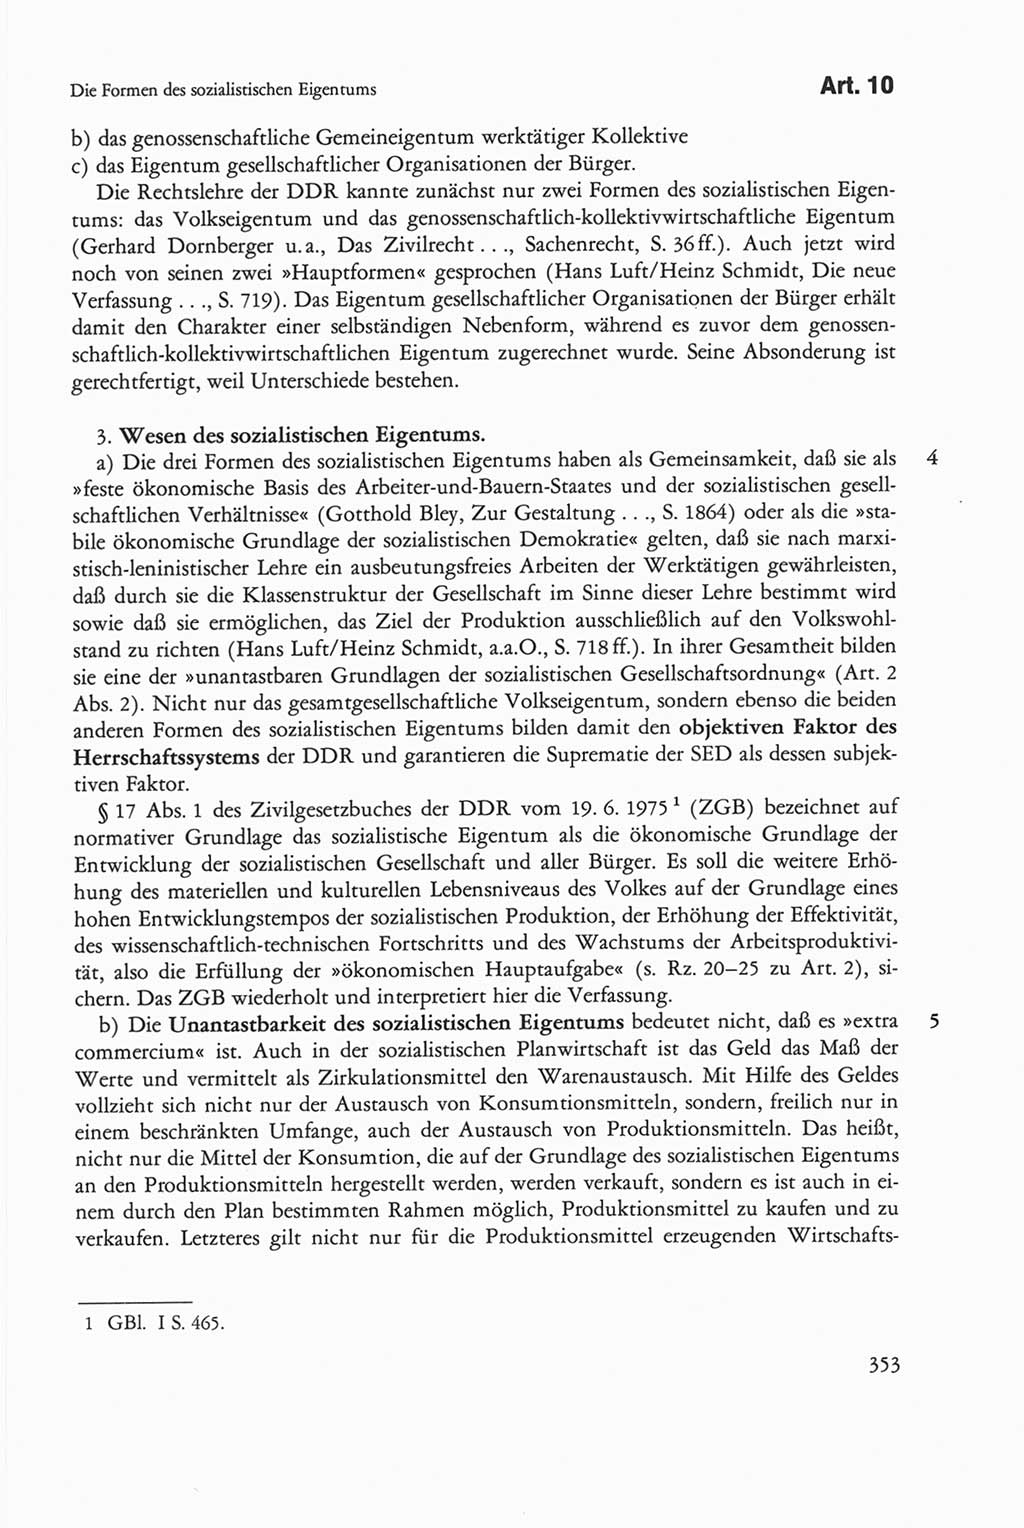 Die sozialistische Verfassung der Deutschen Demokratischen Republik (DDR), Kommentar 1982, Seite 353 (Soz. Verf. DDR Komm. 1982, S. 353)